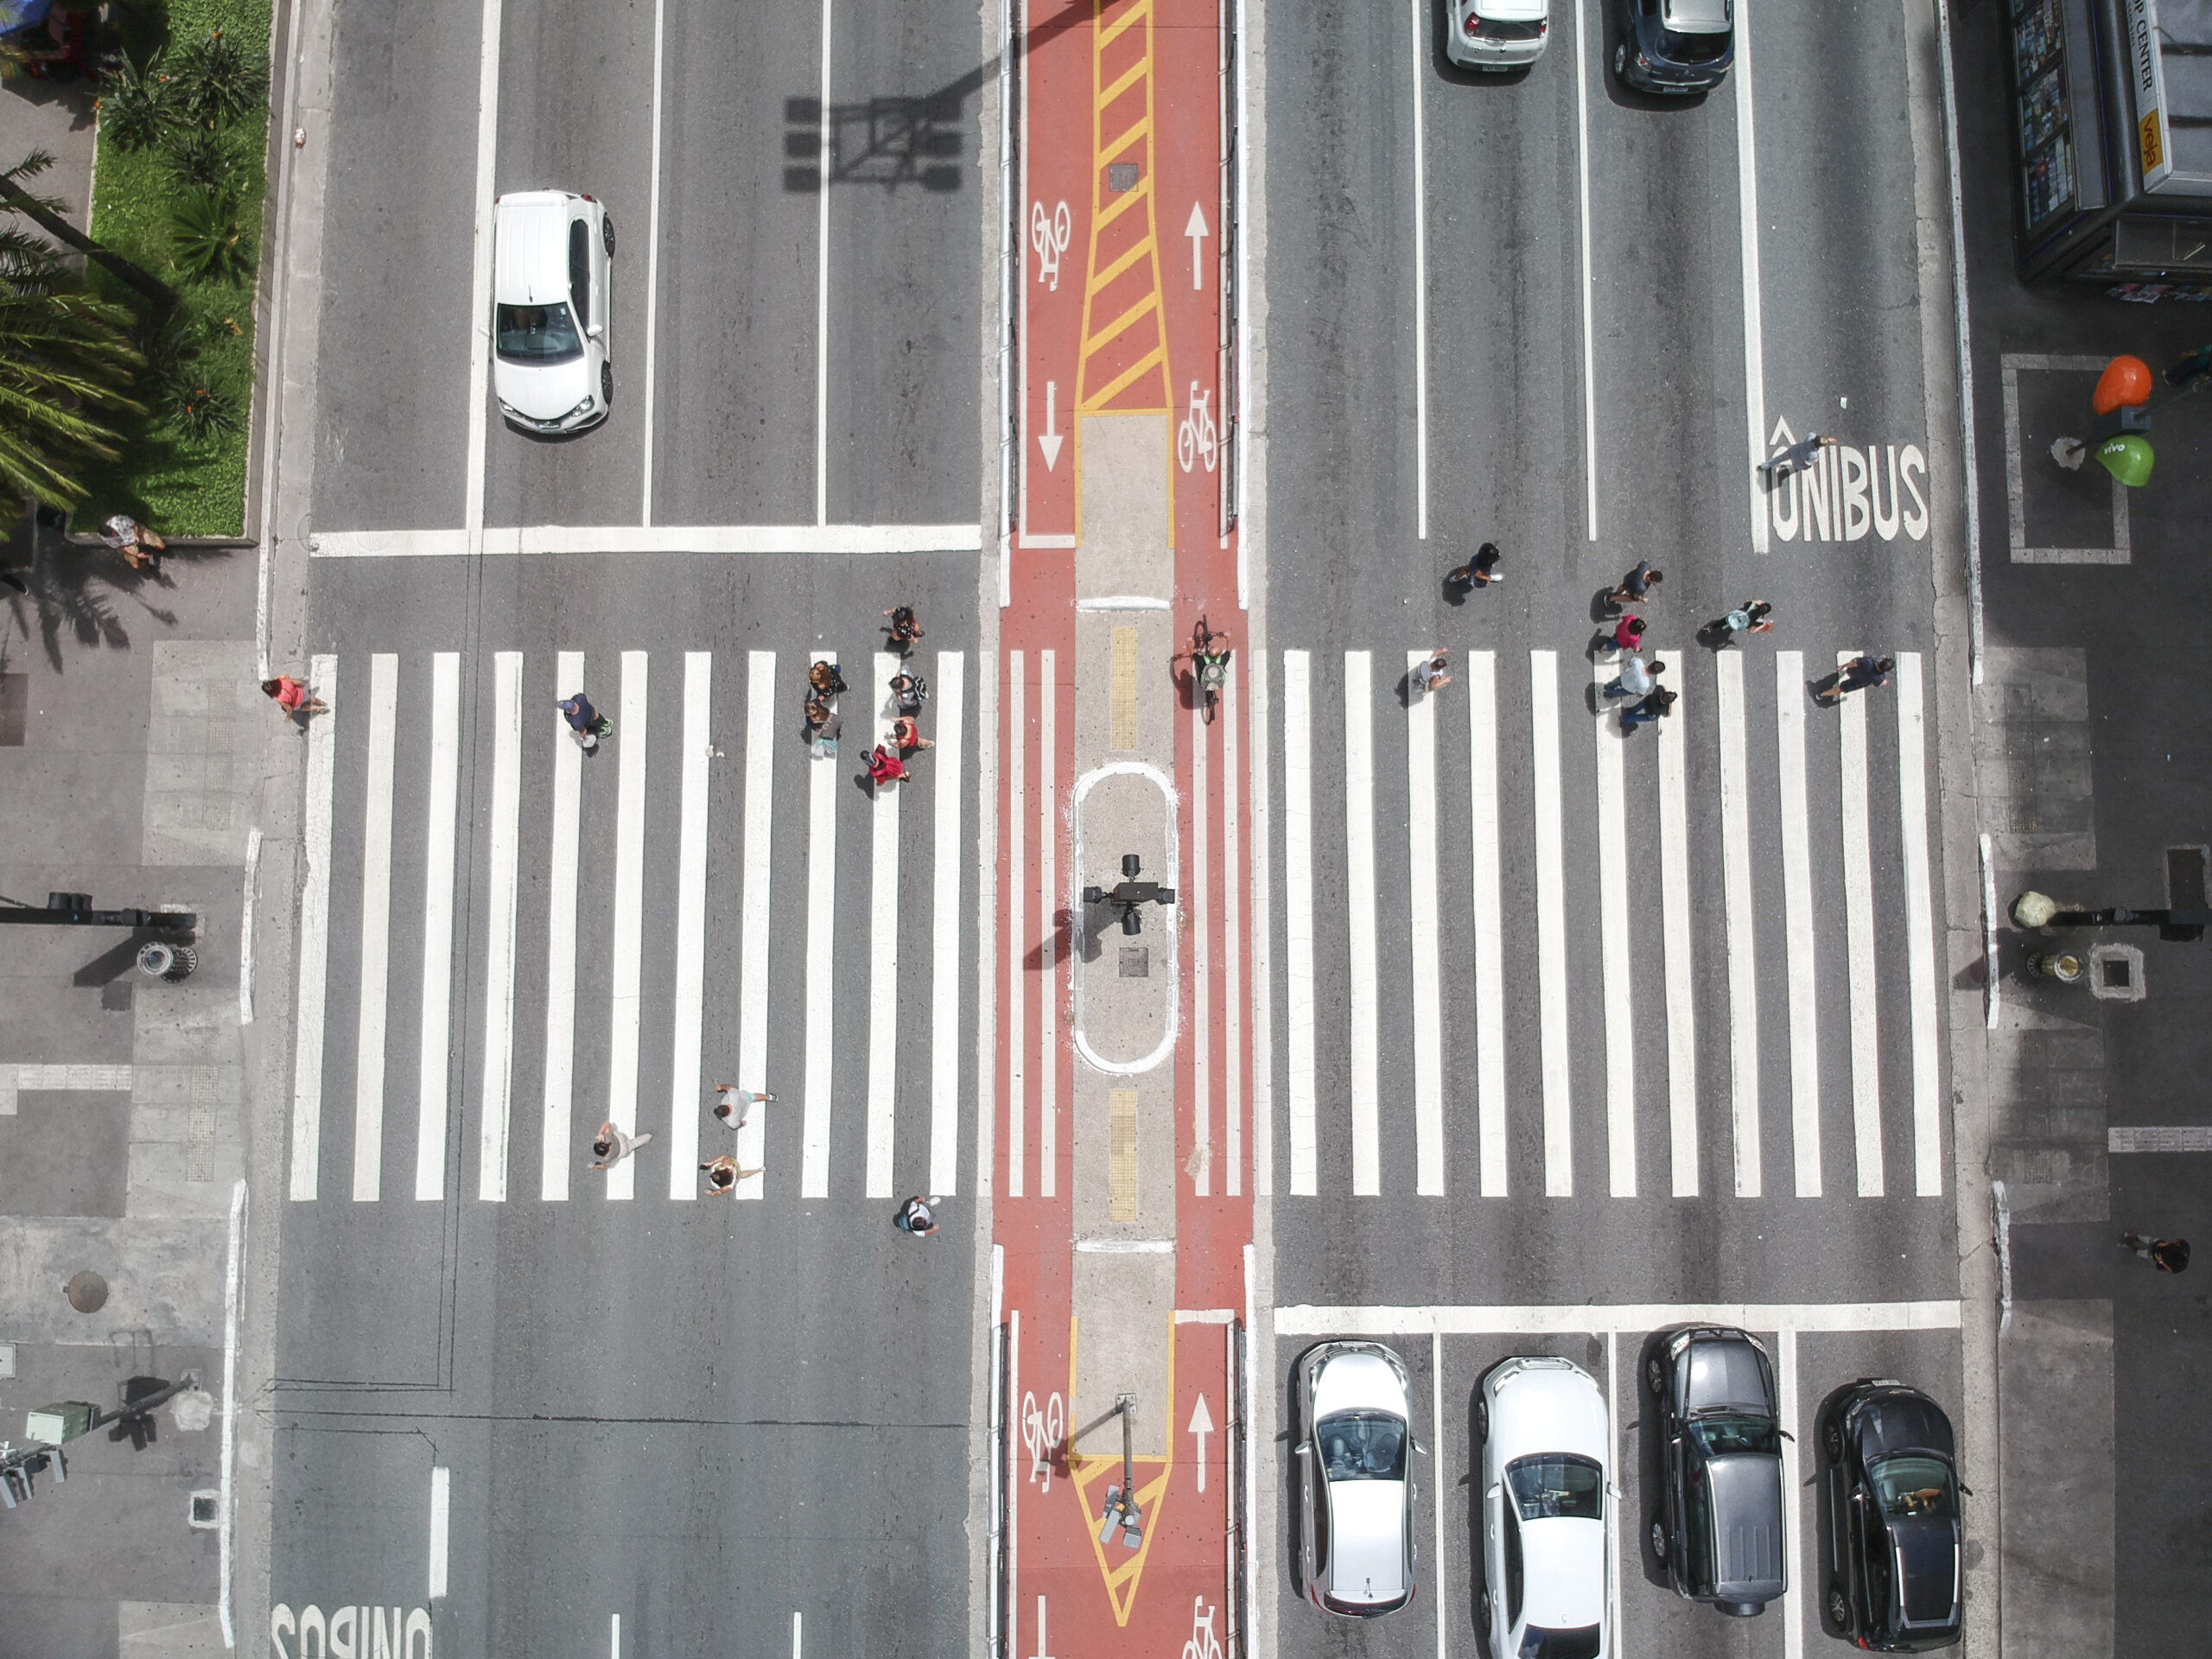 Vista aérea de um trecho da Avenida Paulista em São Paulo, com faixa de pedestres ao centro na horizontal, cliclofaixa vermelha entre duas pistas, pedestres, ciclistas e alguns carros